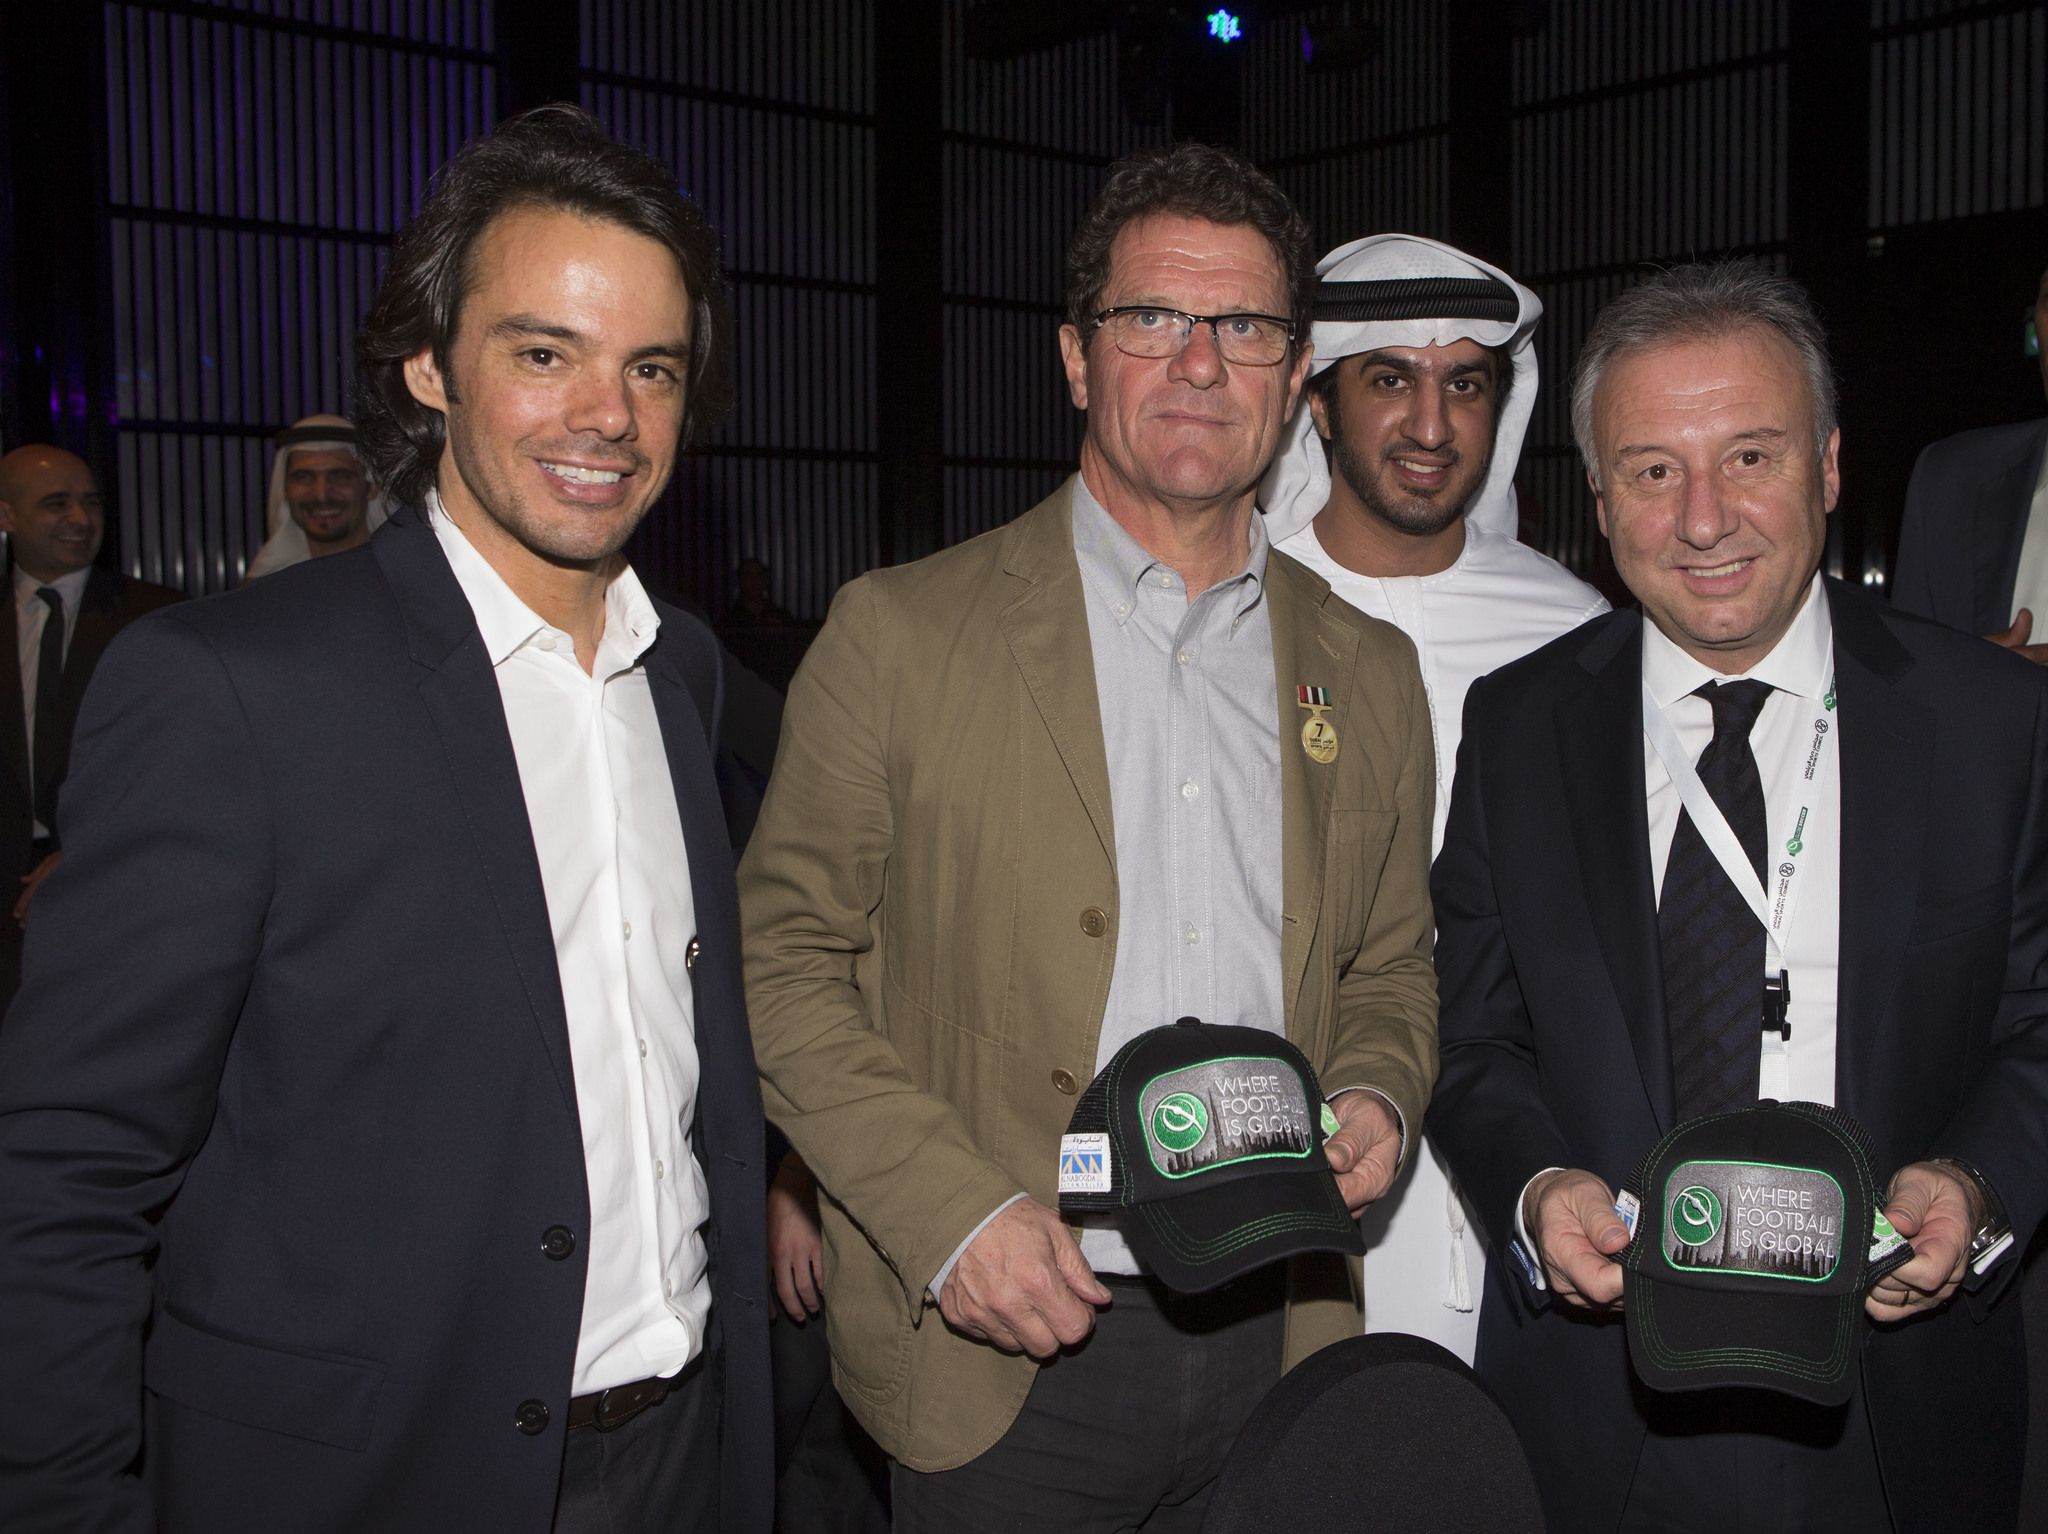 Tomasso Bendoni, CEO of Globe Soccer, together with Fabio Capello and Alberto Zaccheroni.